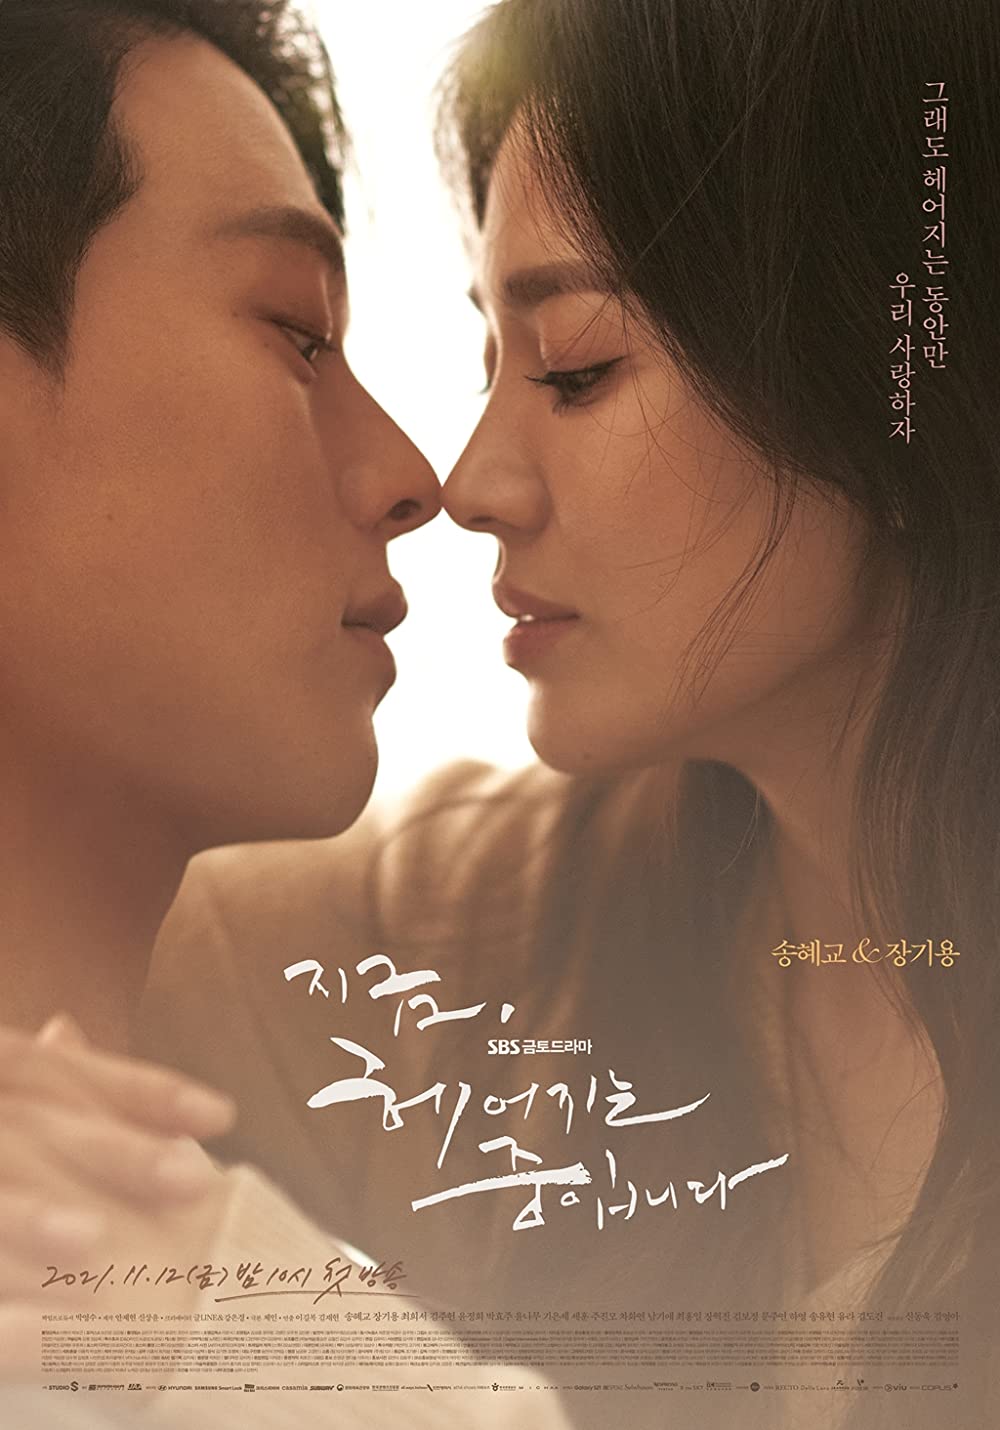 9 Drama Korea kisah putus cinta paling menyedihkan, bikin nangis